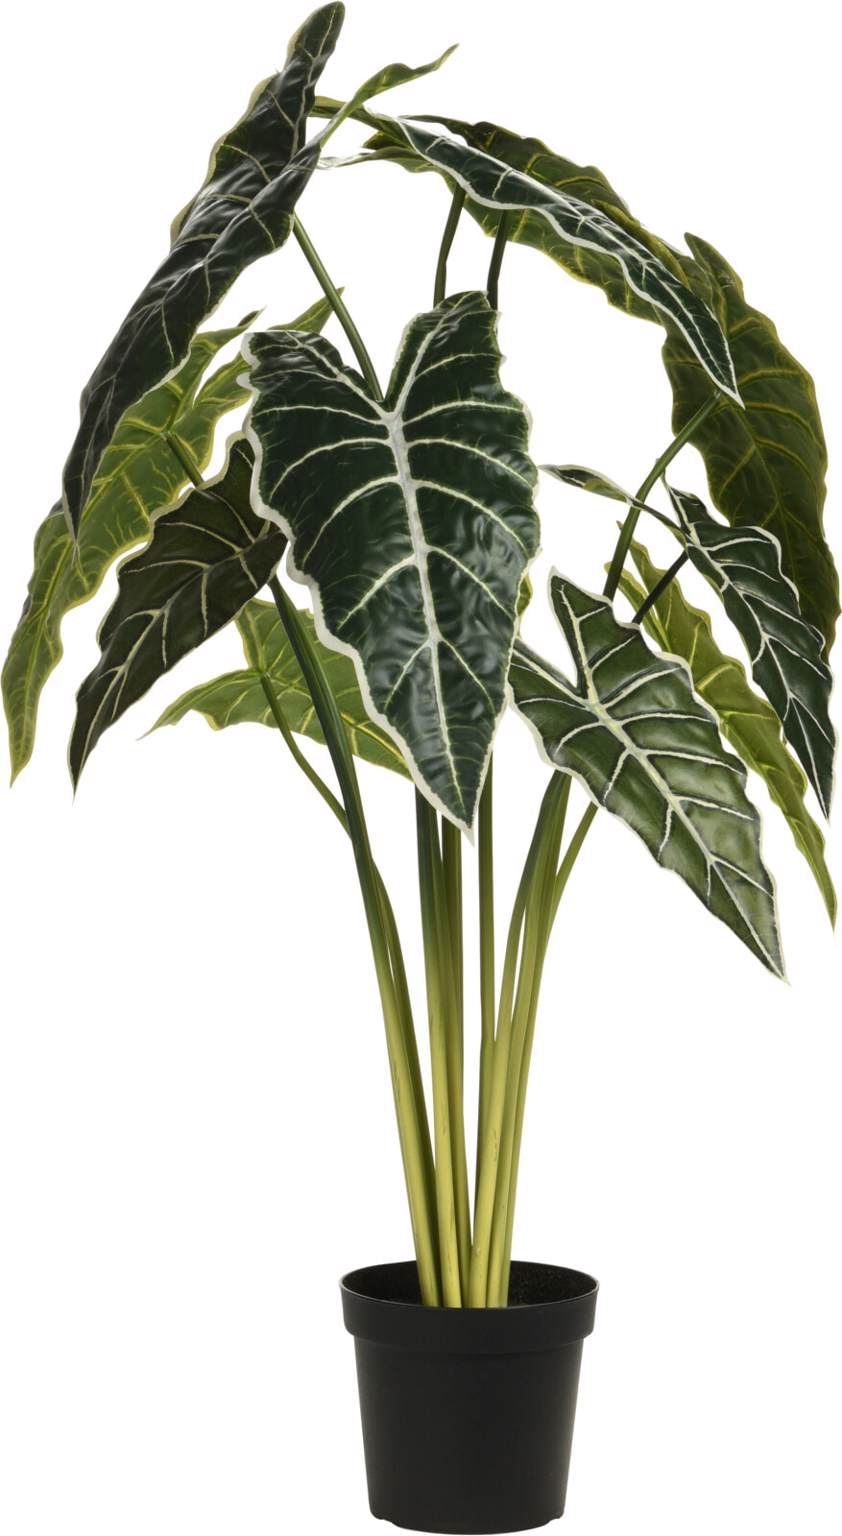 Plant Alocasia in Plant Pot